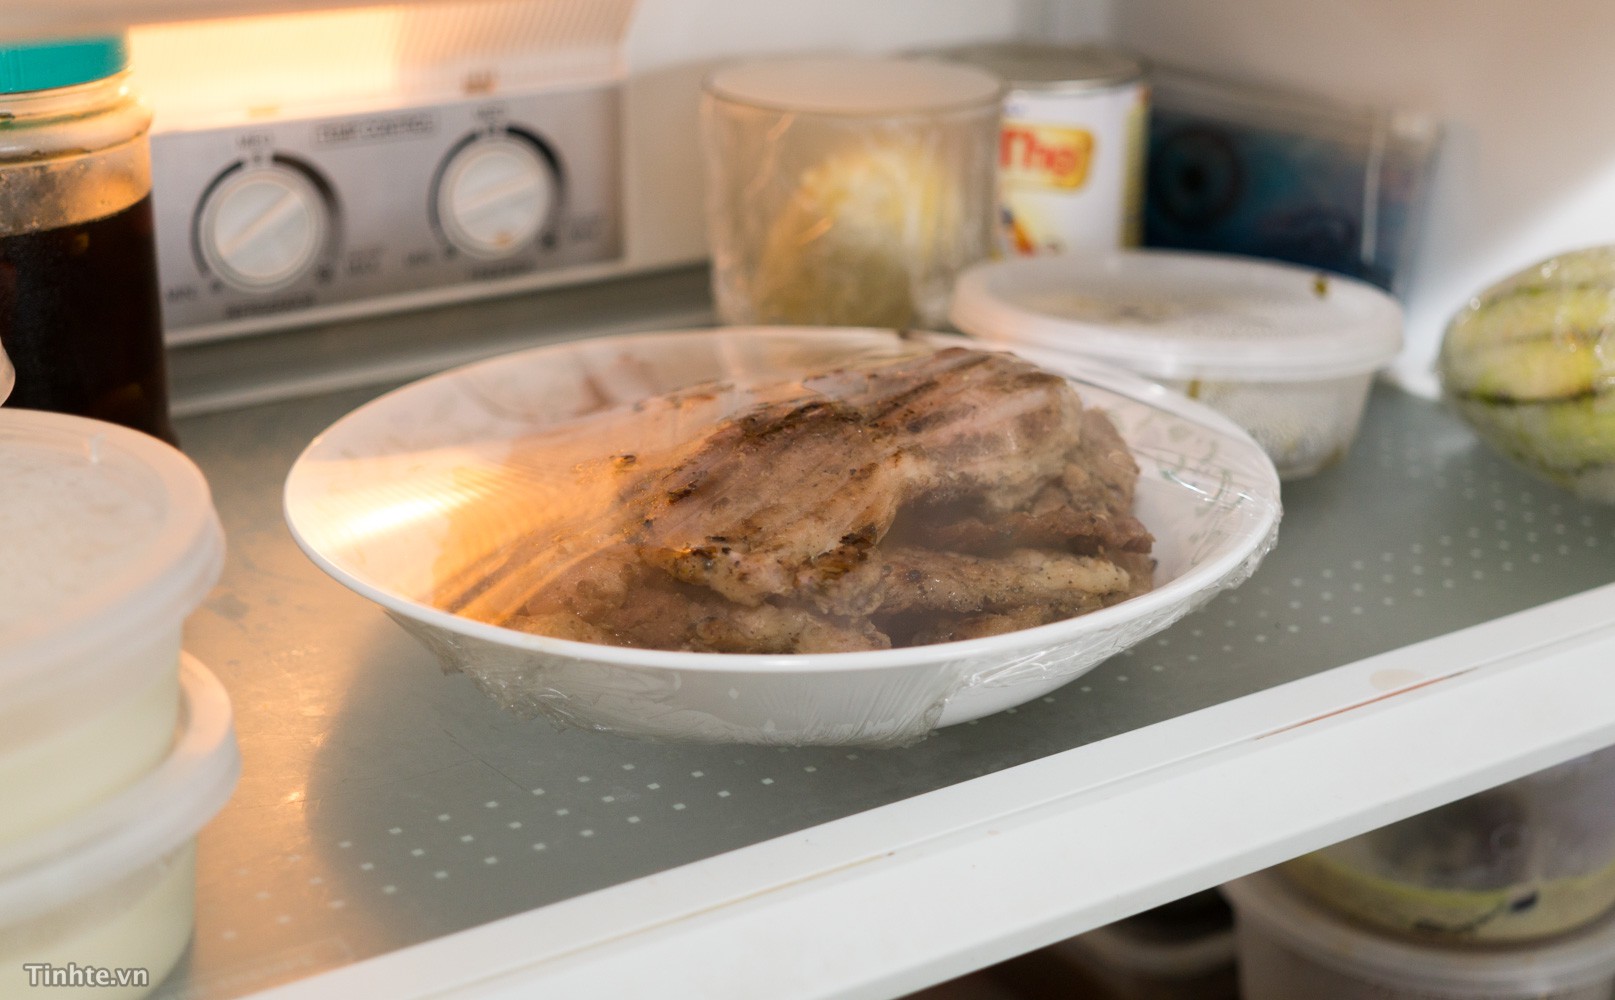 Bảo quản thịt chín trong tủ lạnh còn thừa sau bữa ăn kiểu này: Thêm cớ để mầm mống ung thư tìm đến bạn - Ảnh 3.